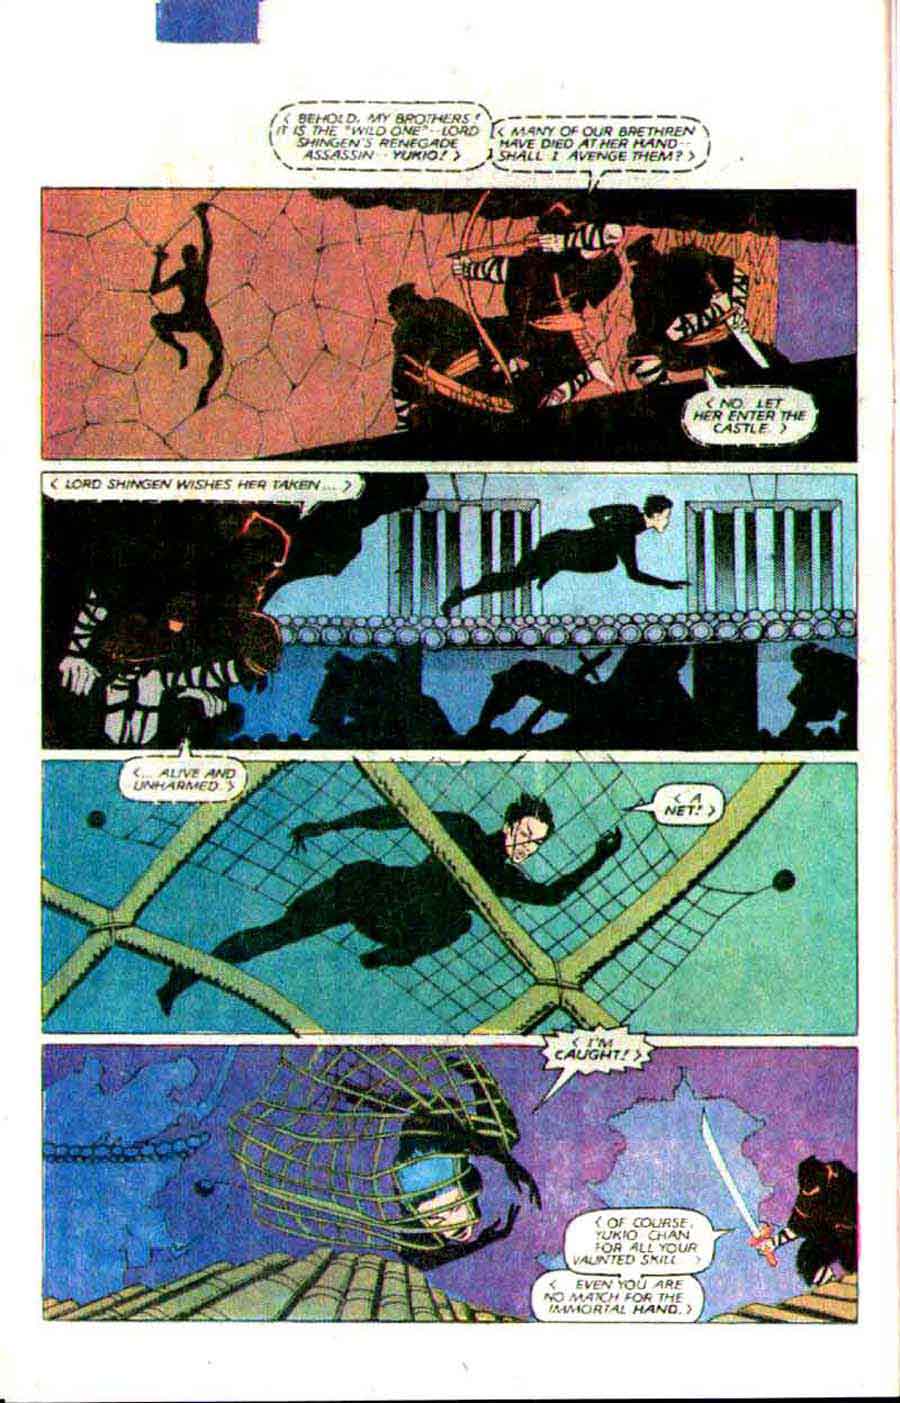 Wolverine v1 #4 1980s marvel comic book page art by Frank Miller